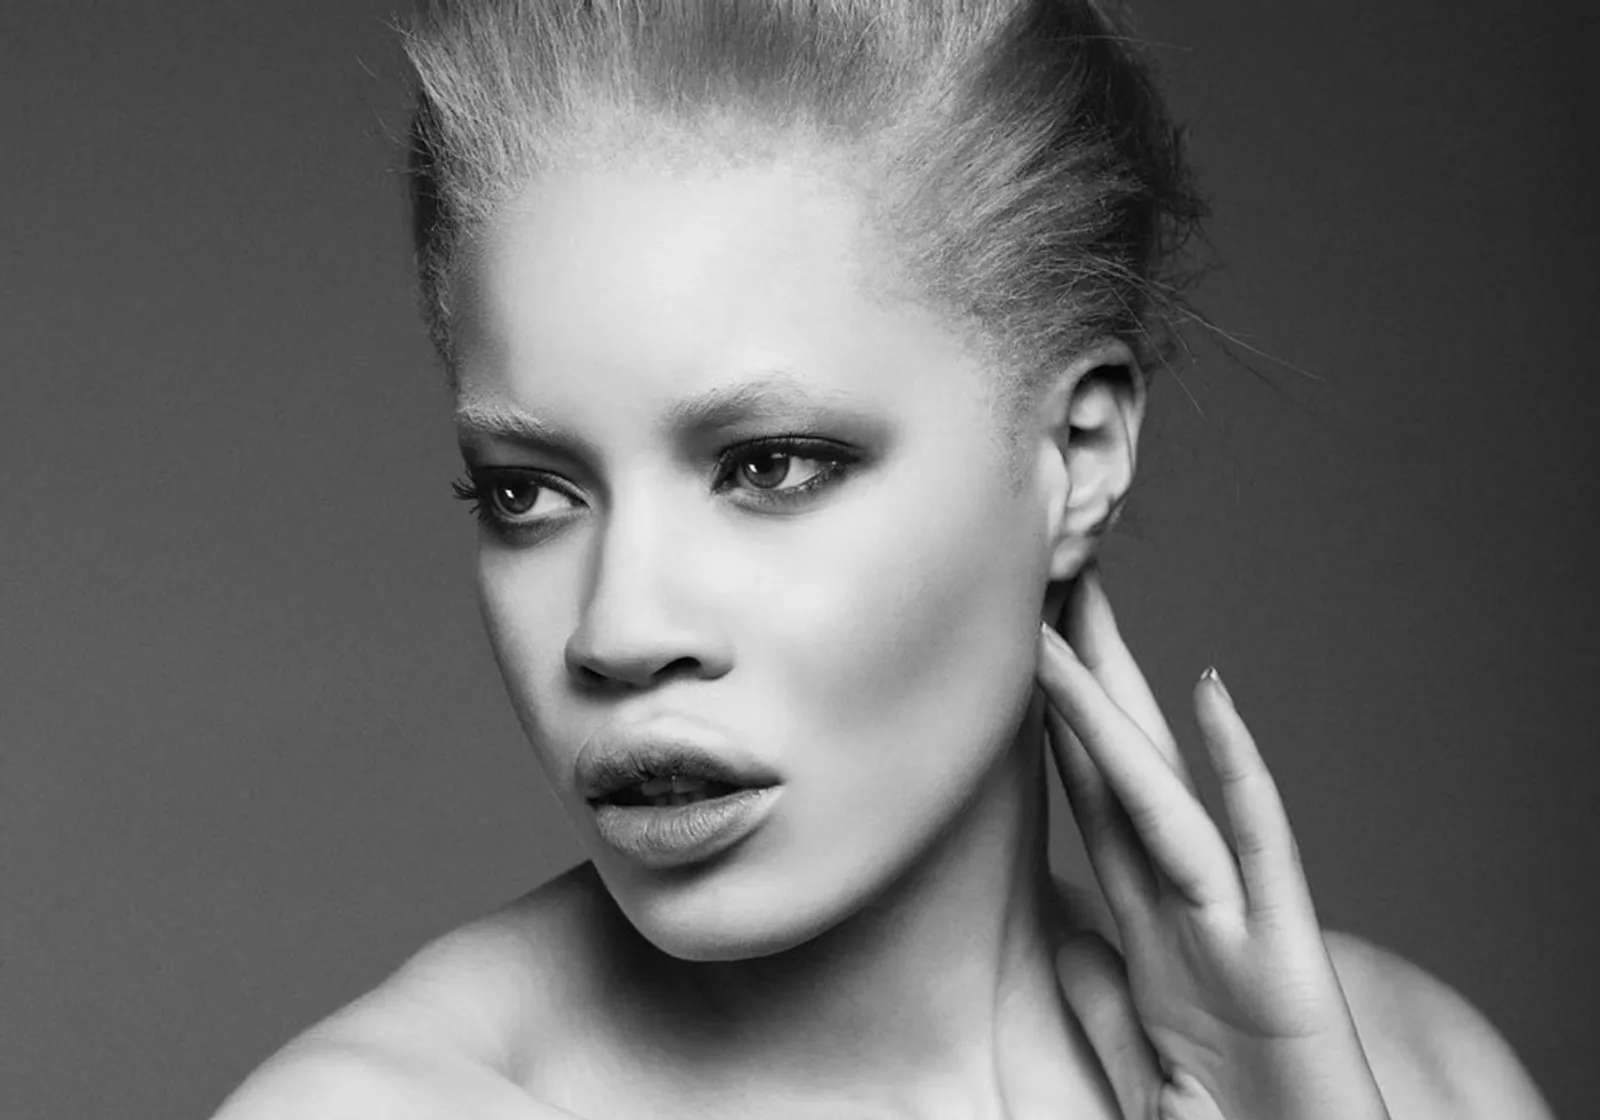 Brand Kosmetik Ini Gandeng Model Albino untuk Jadi Bintang Iklan